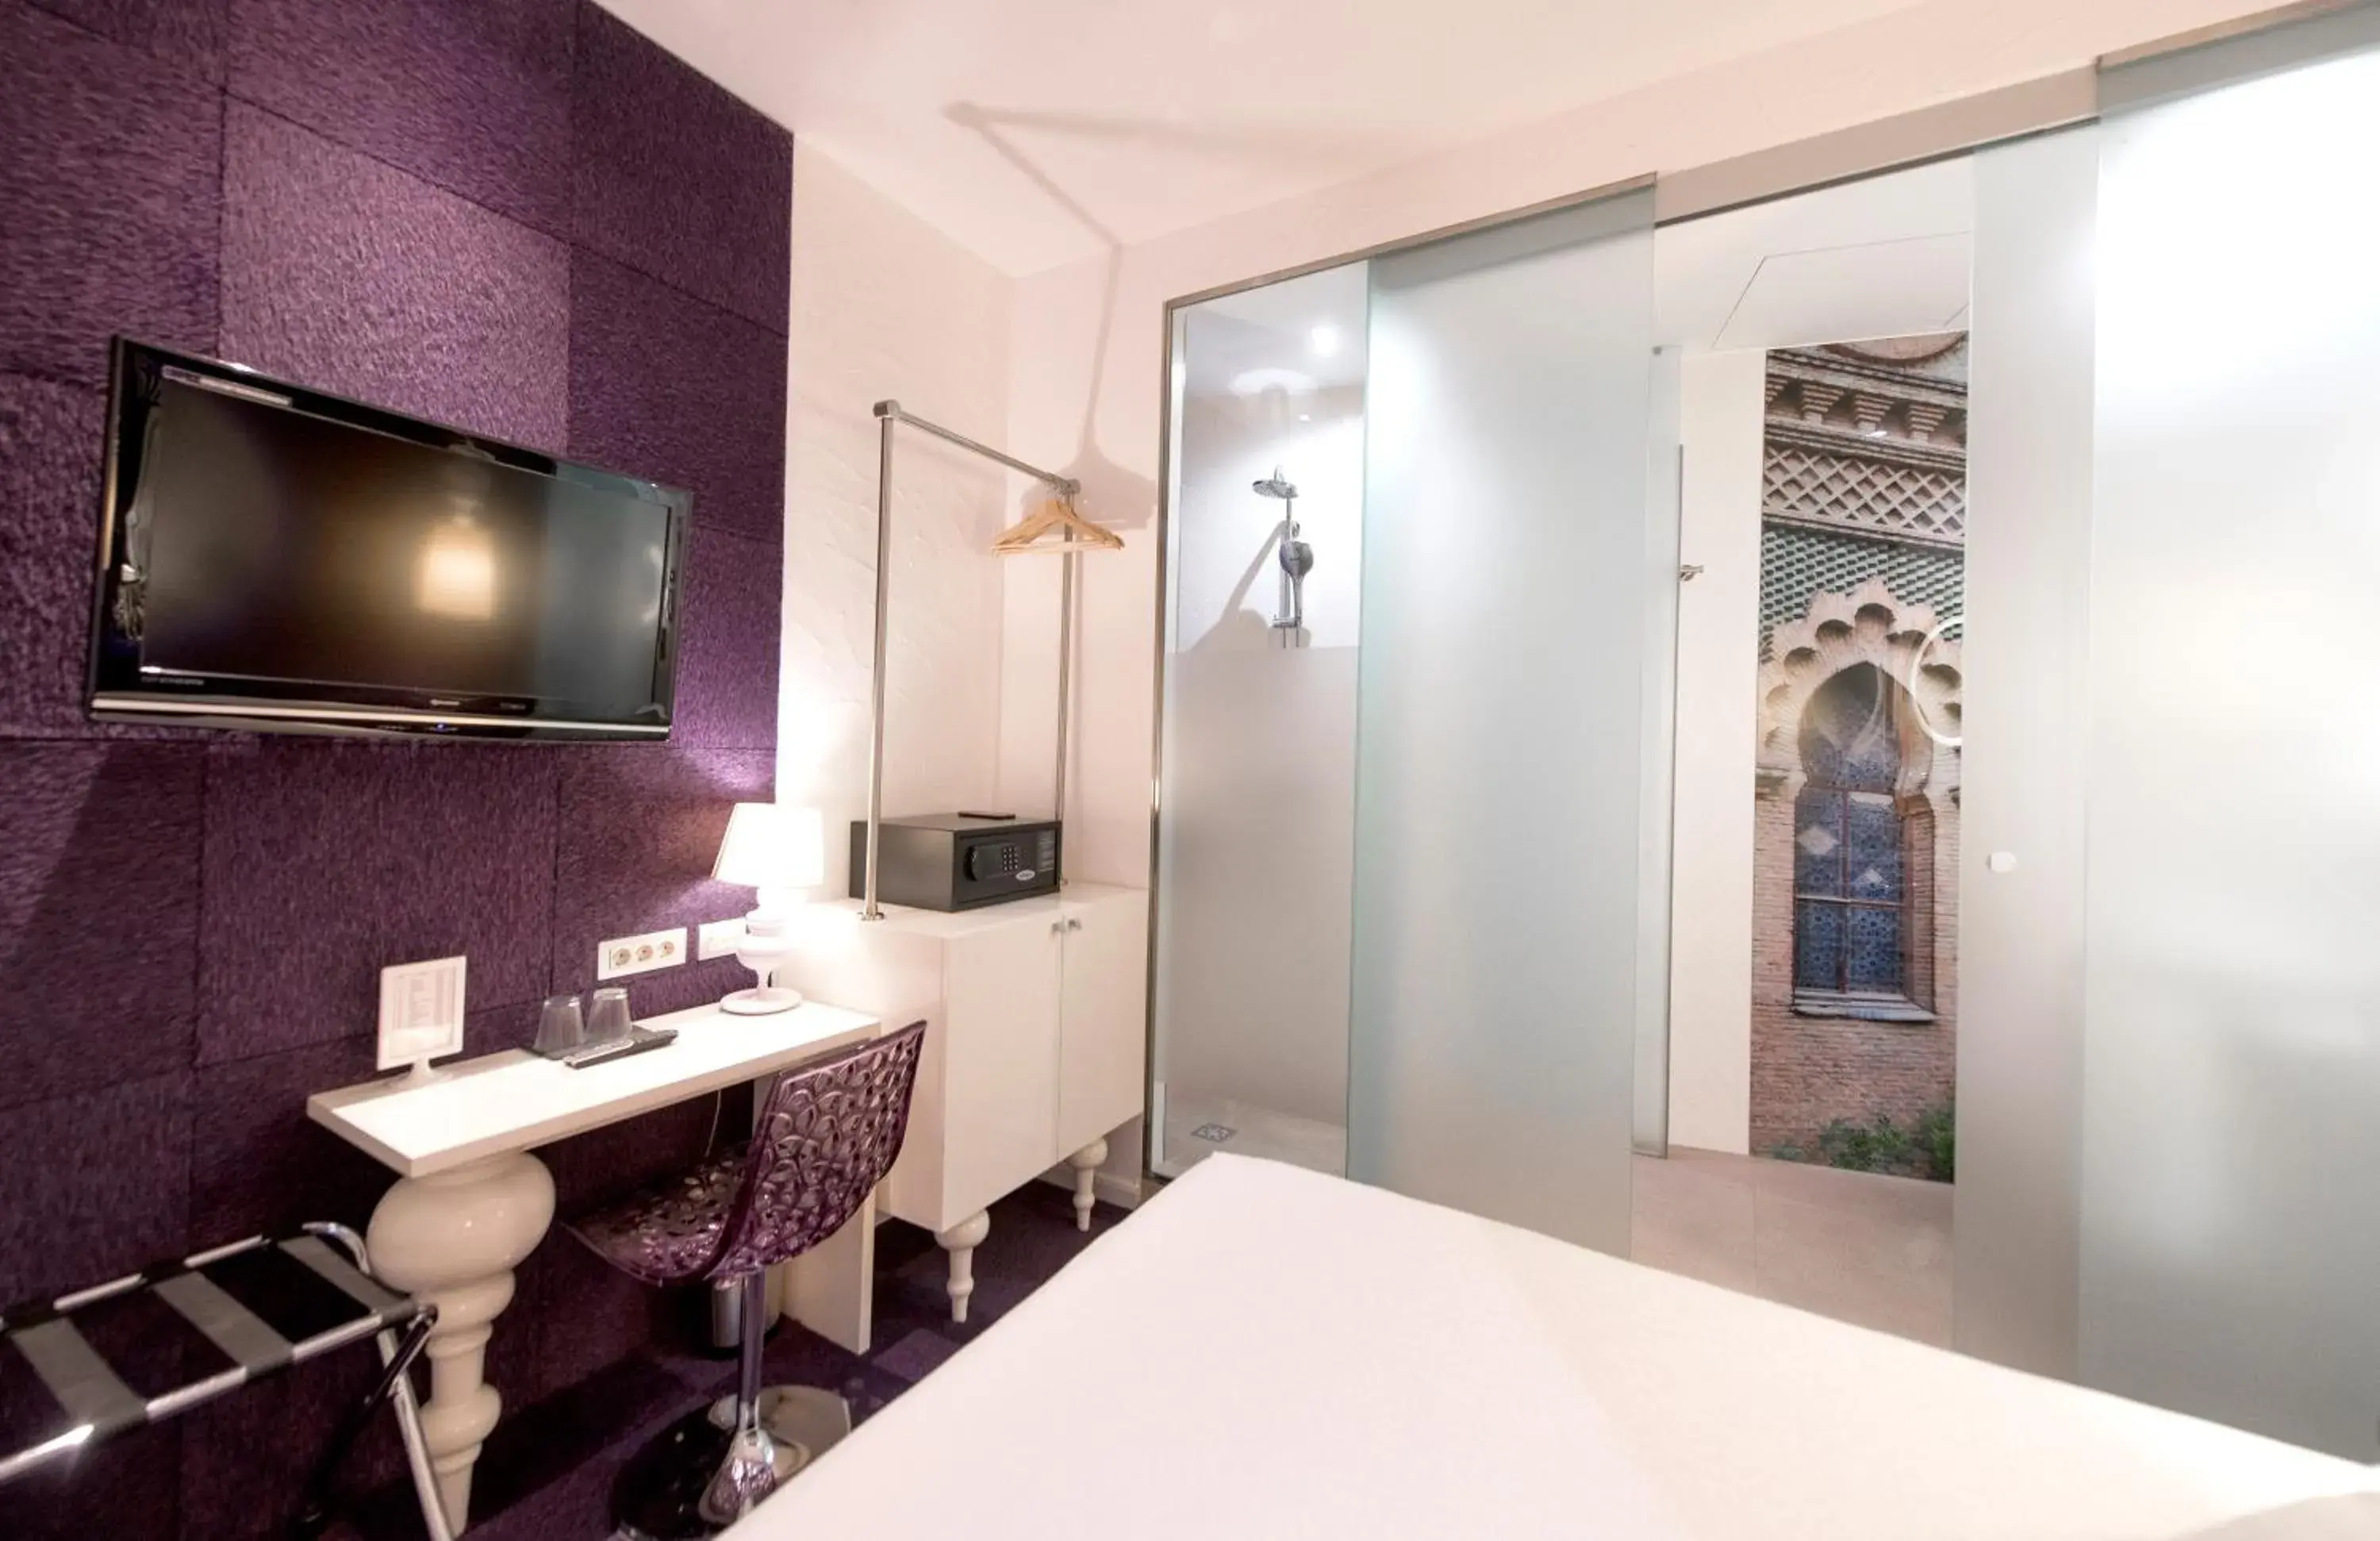 TV and multimedia, Bathroom in Posada del Dragón Boutique Hotel